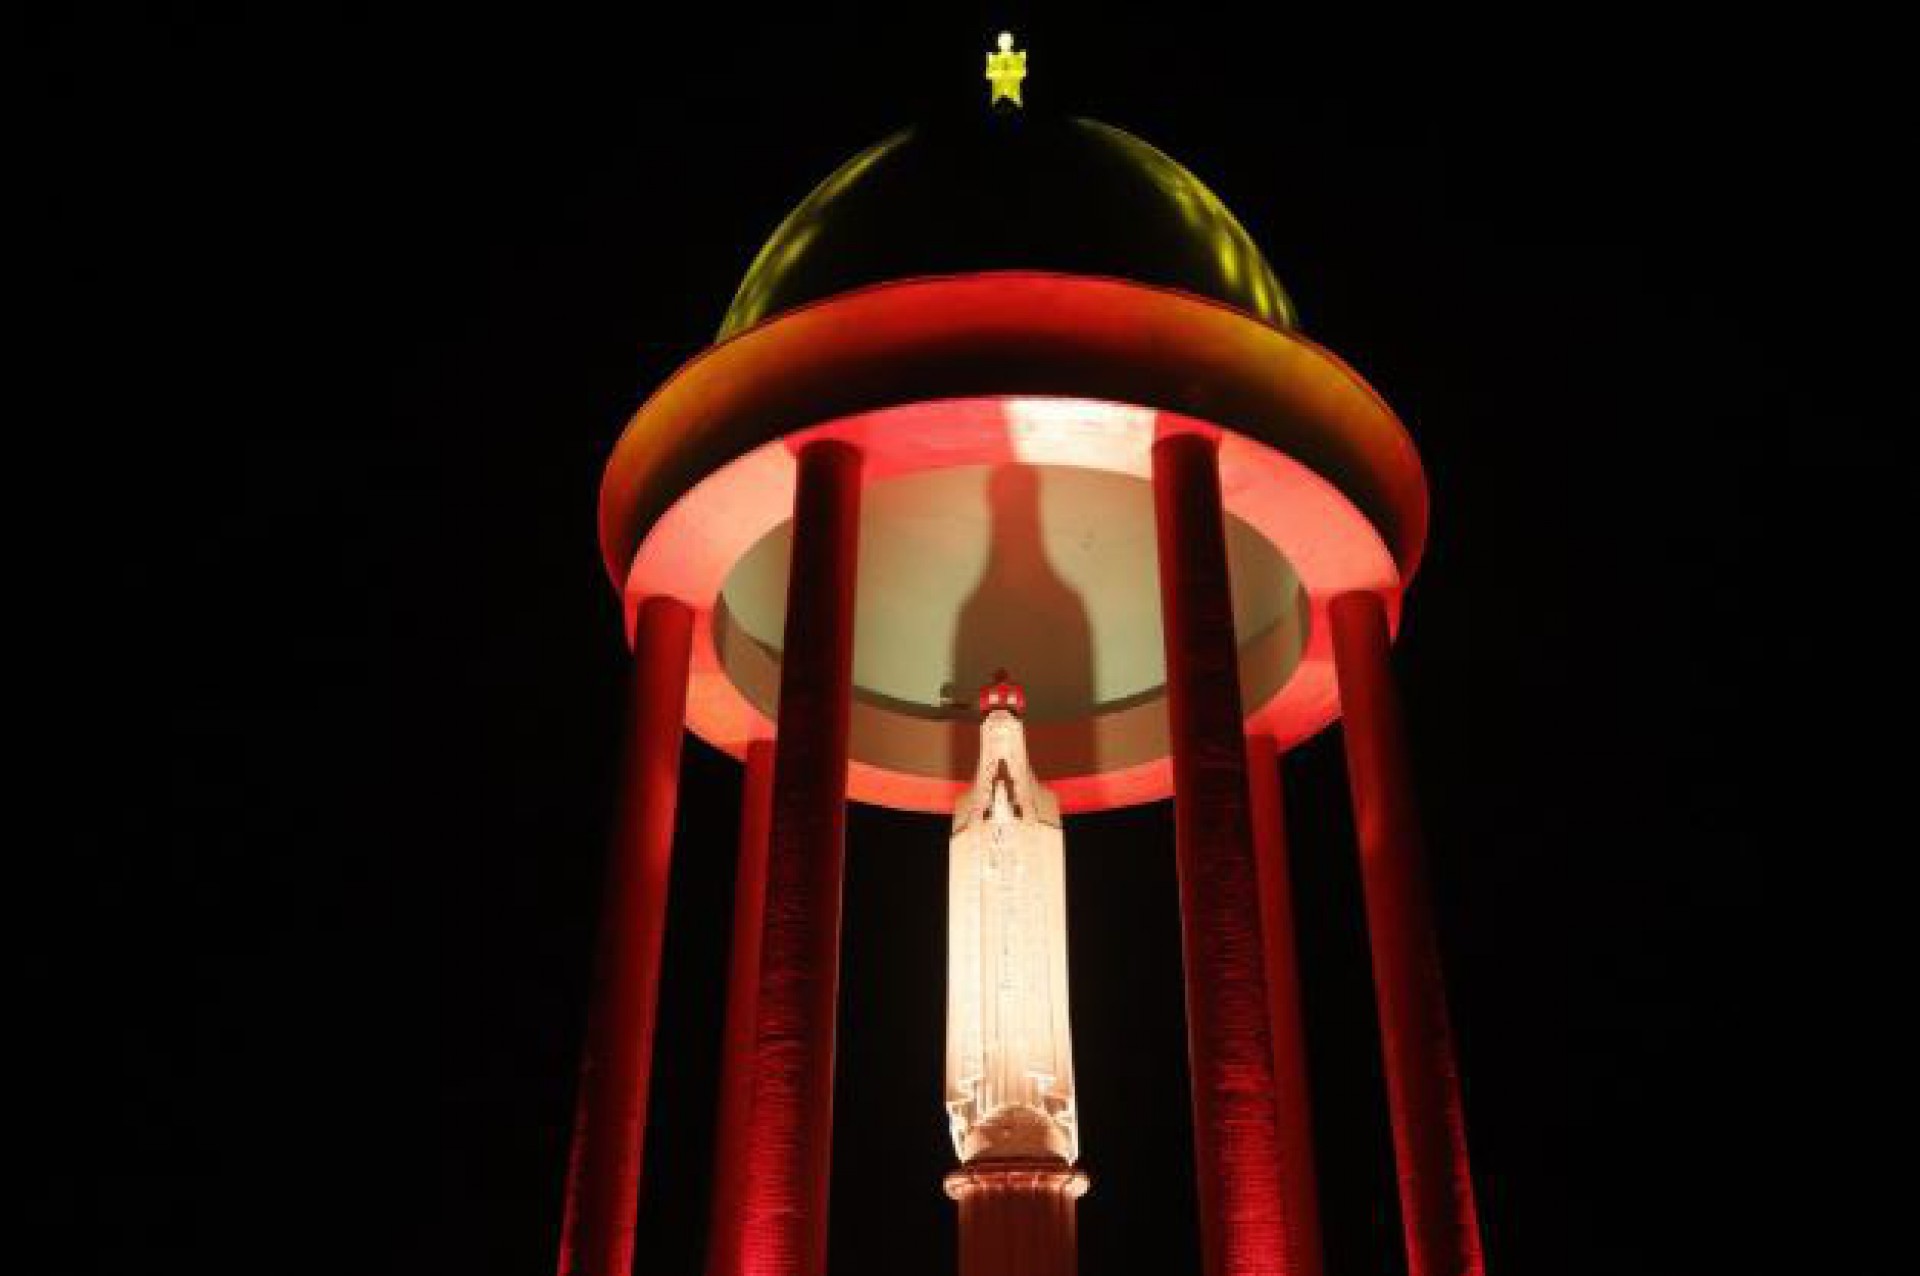 Trono de Fátima, em Petrópolis, iluminado com as cores da bandeira da Alemanha - Divulgação/Ascom